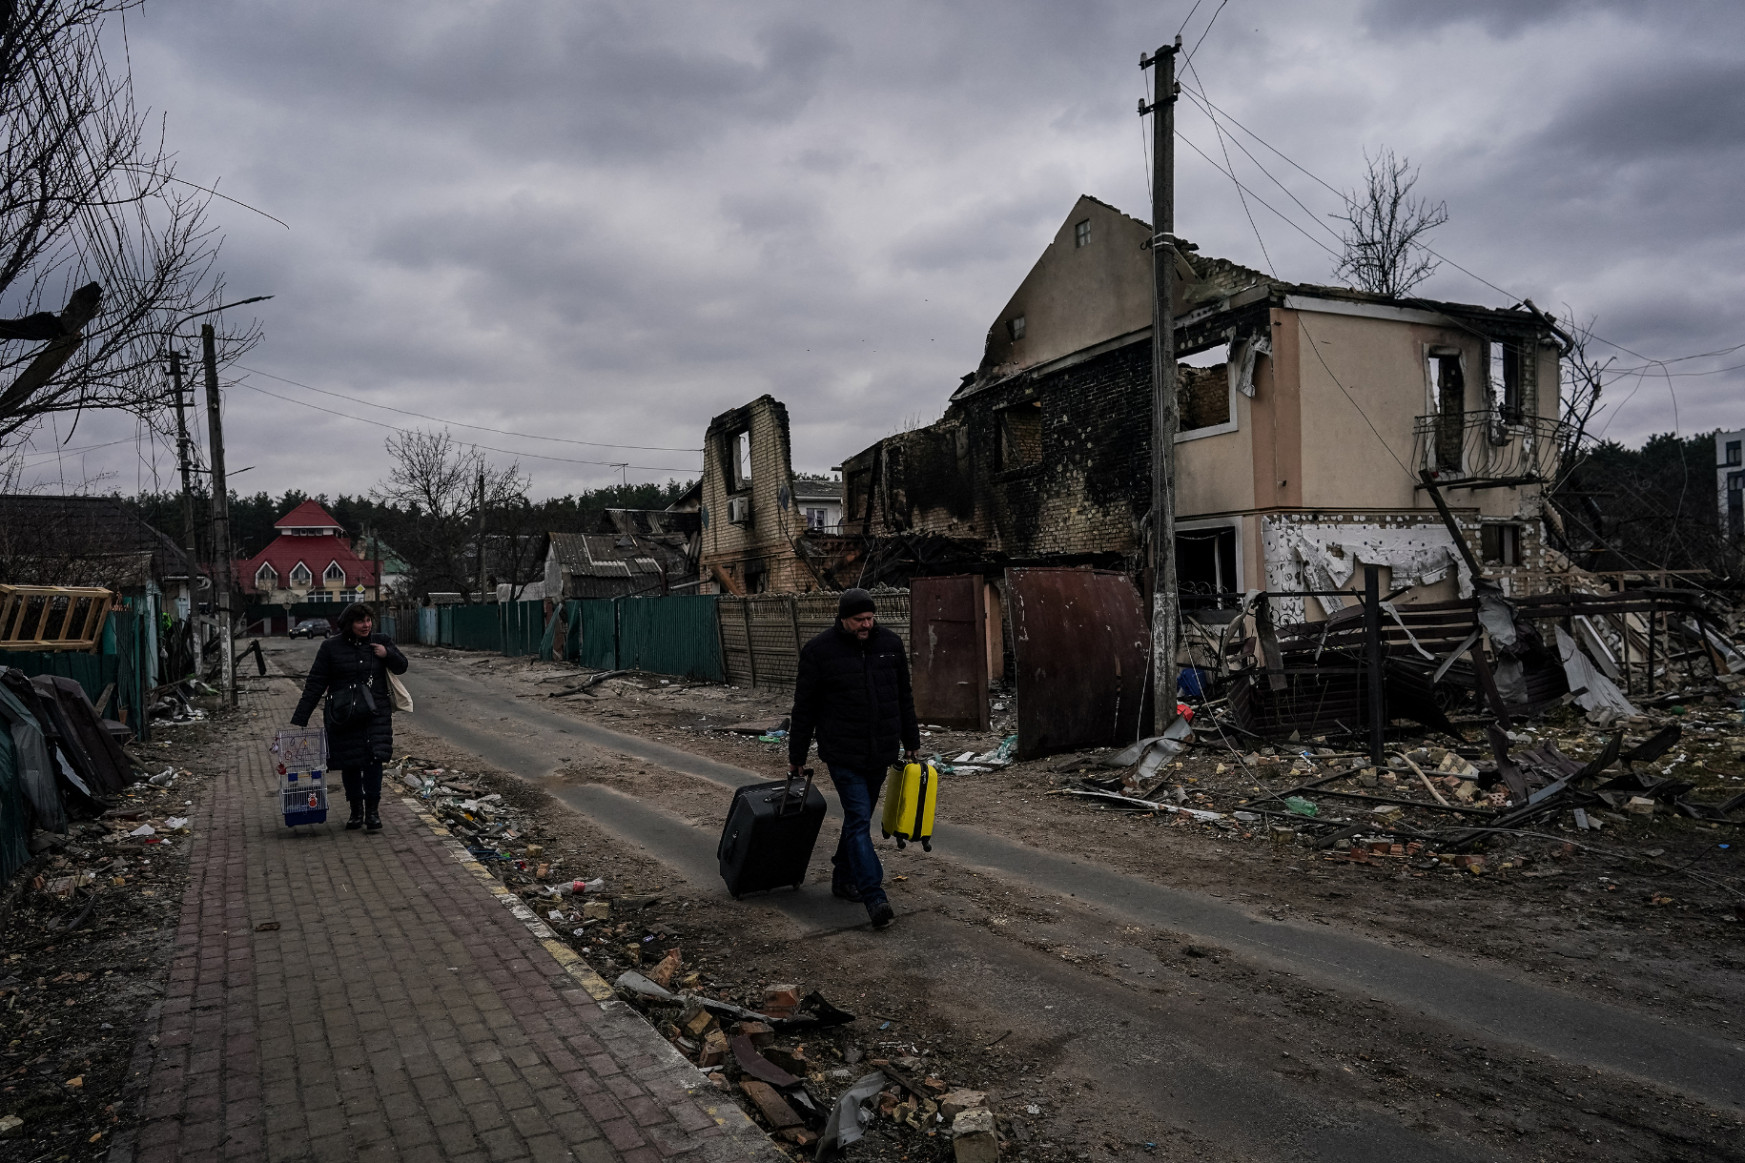 Hétfőn tárgyalhat újra az ukrán és orosz delegáció, folytatódik a Mariupol elleni támadás, az izraeli kormányfő Moszkvába repült